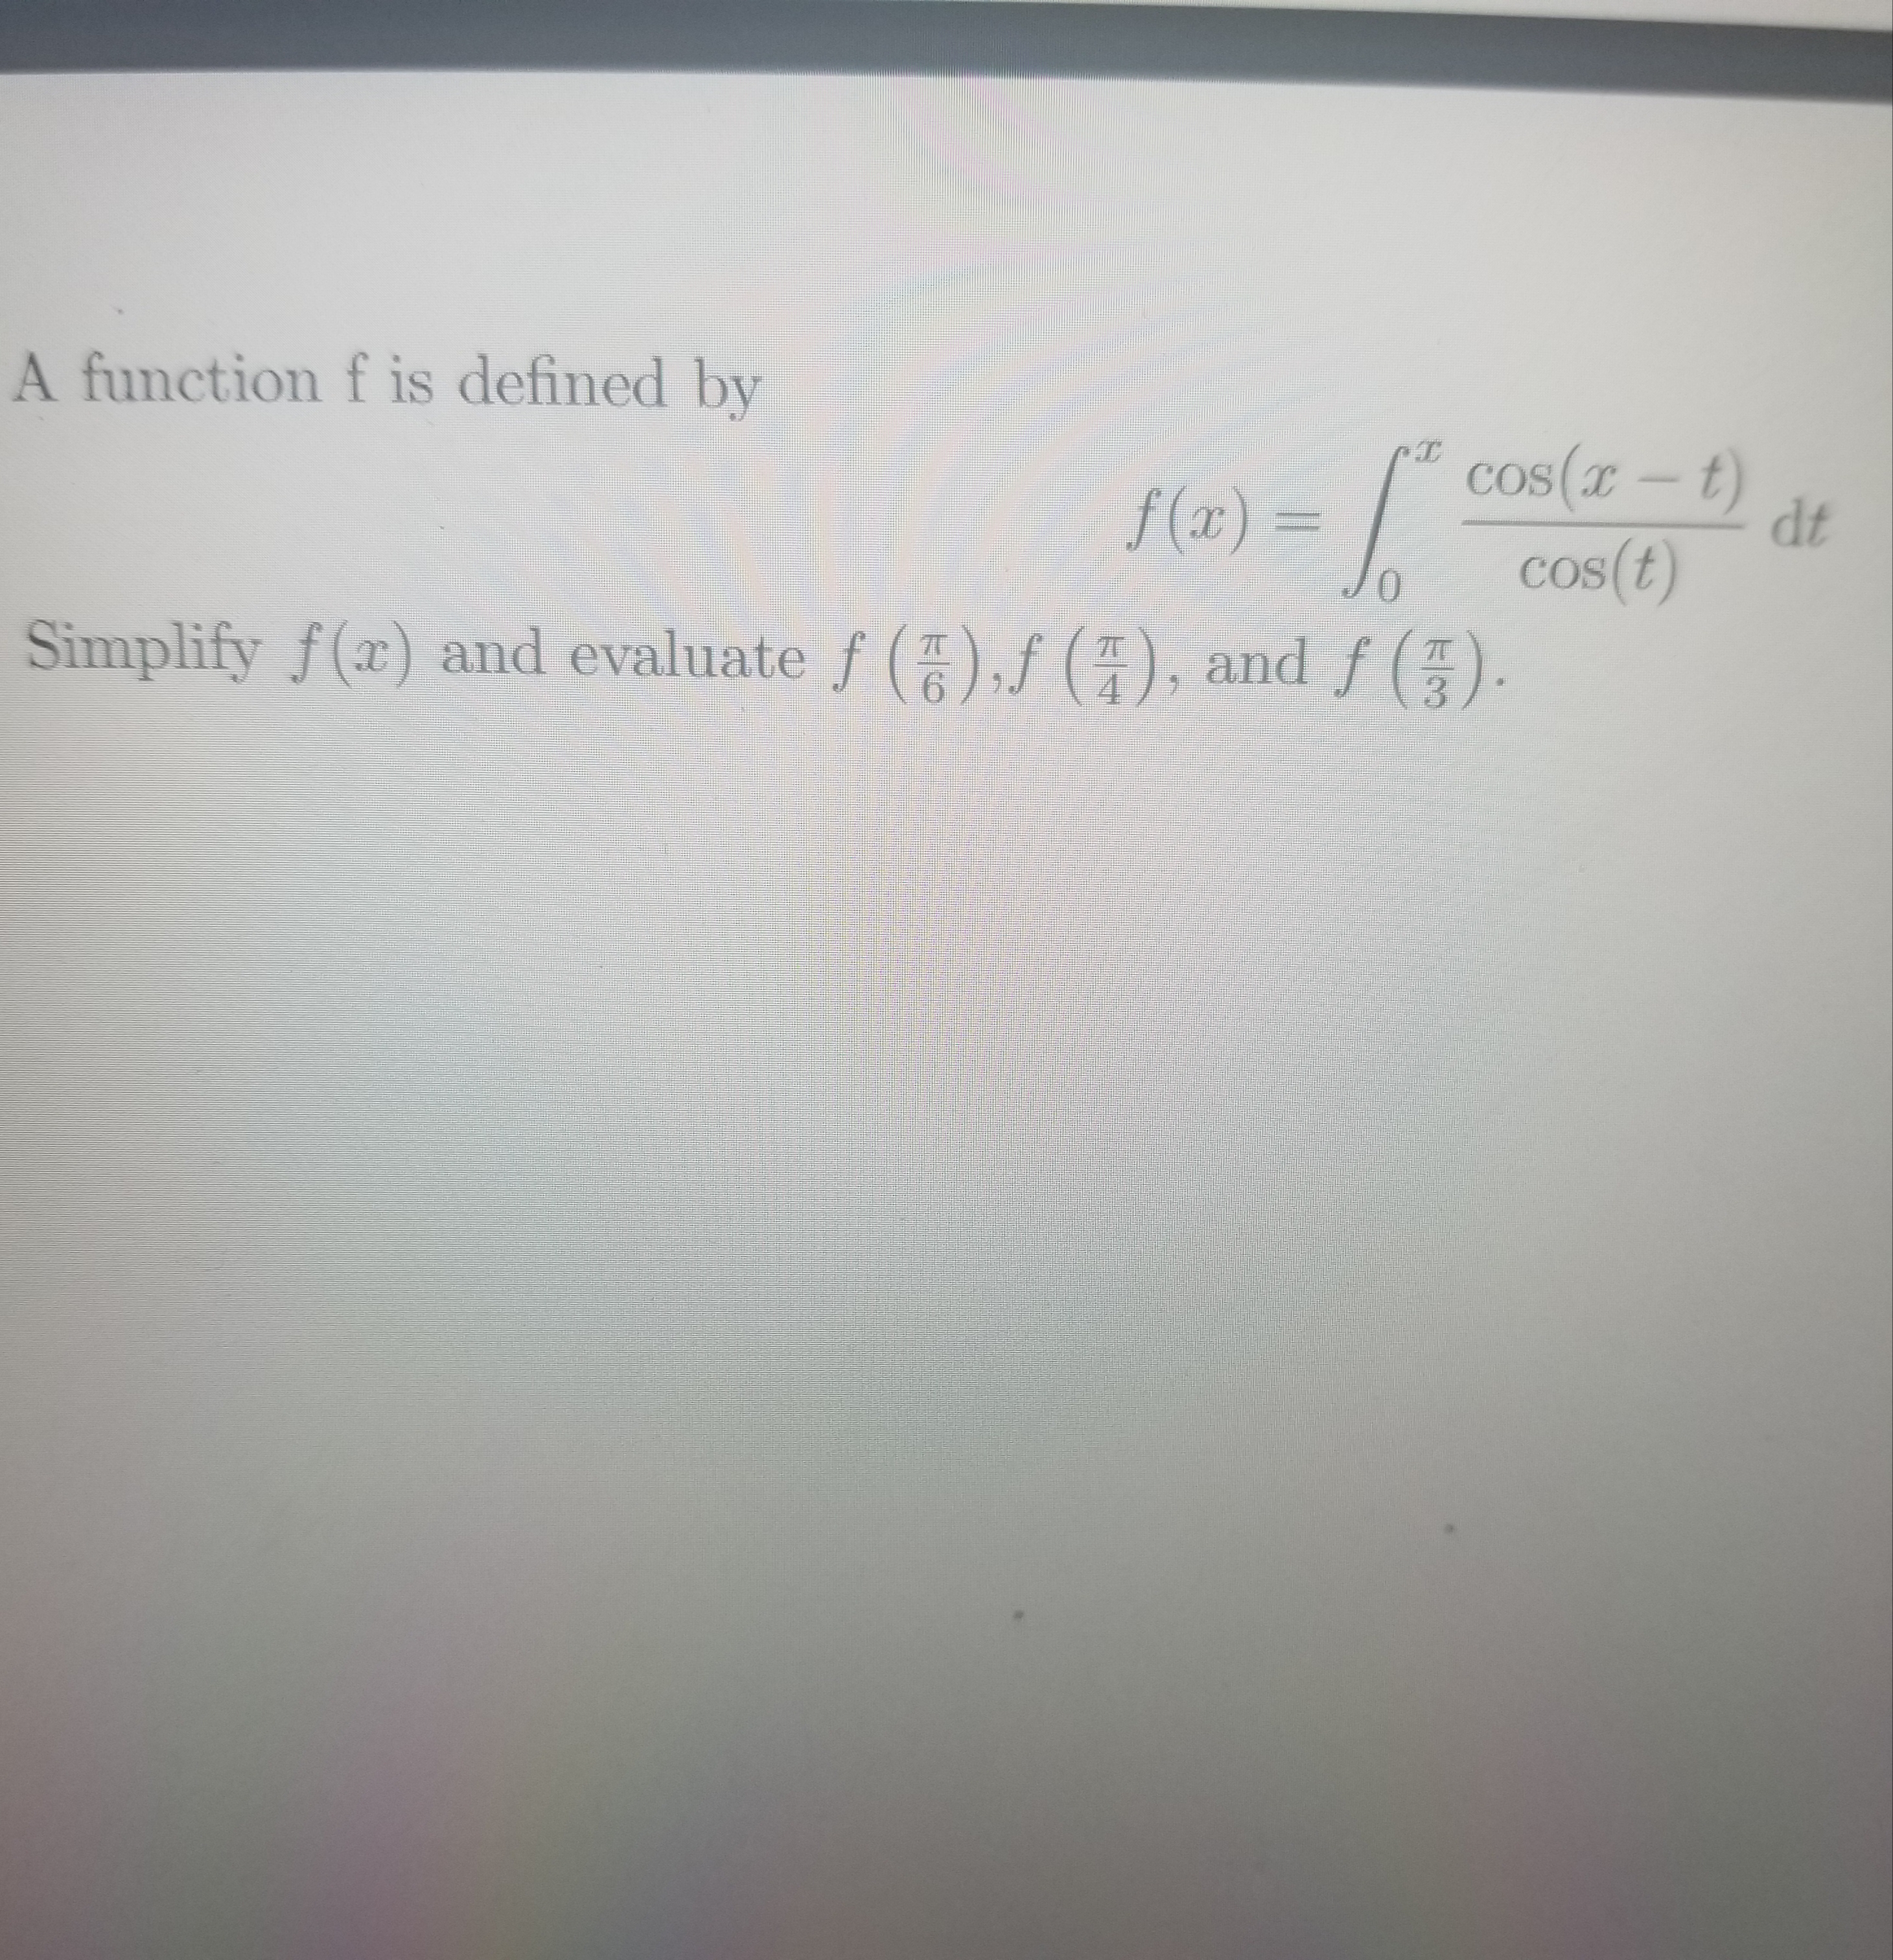 A function f is defined by
f (x1) = / Cos(x – t)
os(x-t)
dt
cos(t)
f (x) :
01
Simplify f(x) and evaluate f ()f (), and f().
